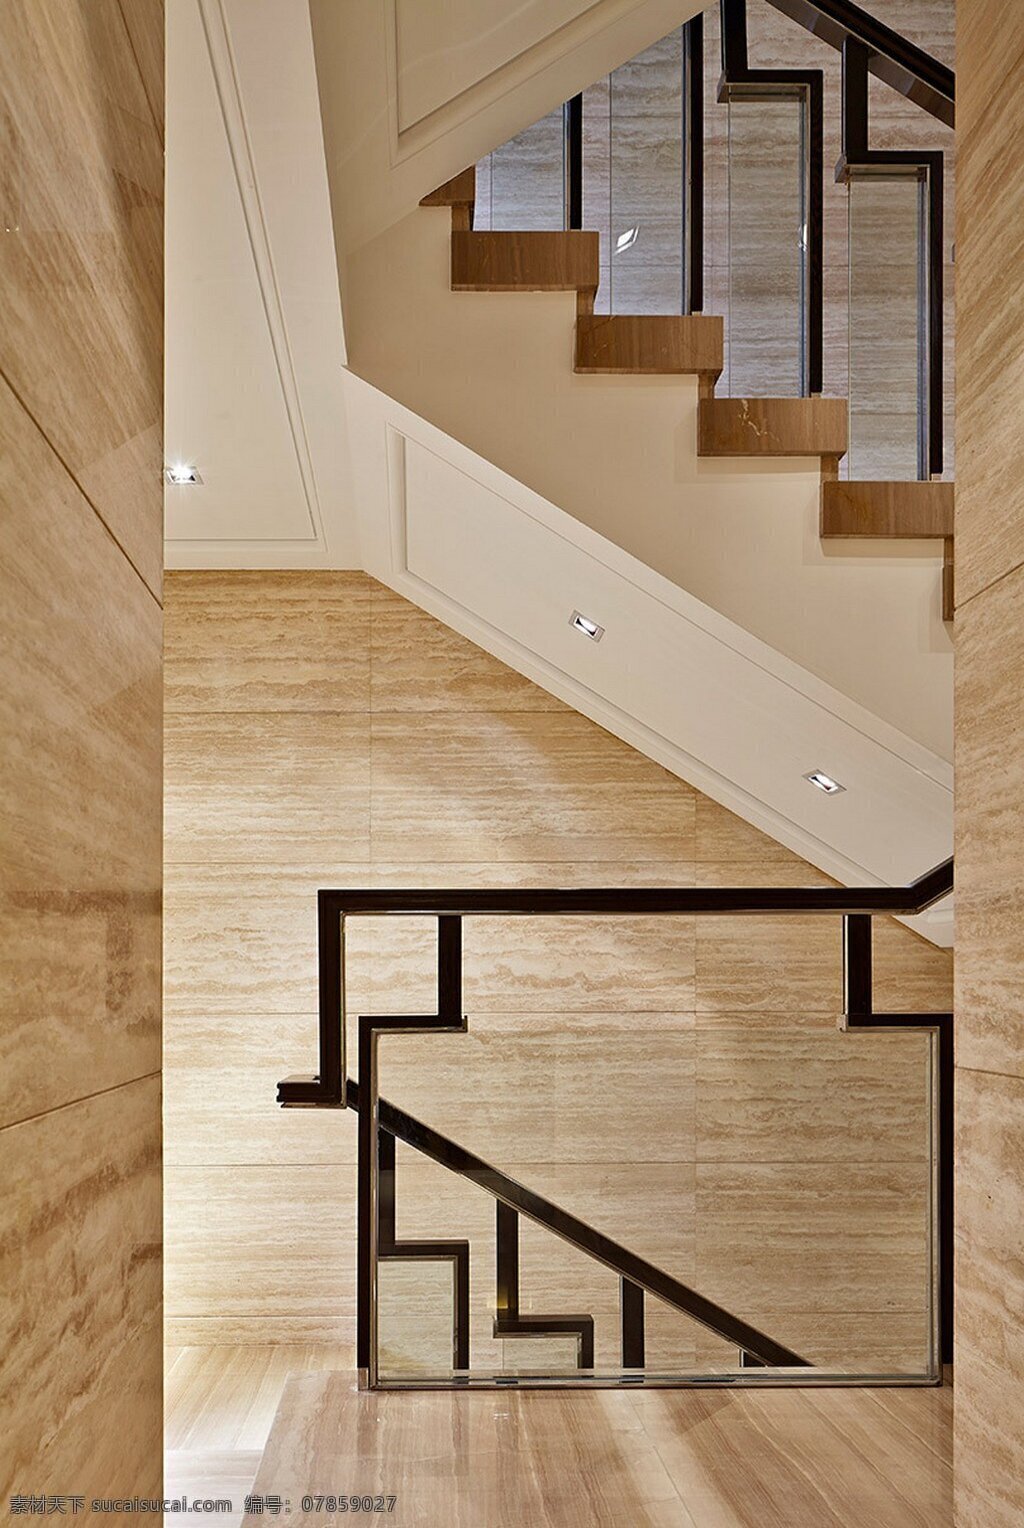 简约 创意 楼梯 设计图 家居 家居生活 室内设计 装修 室内 家具 装修设计 环境设计